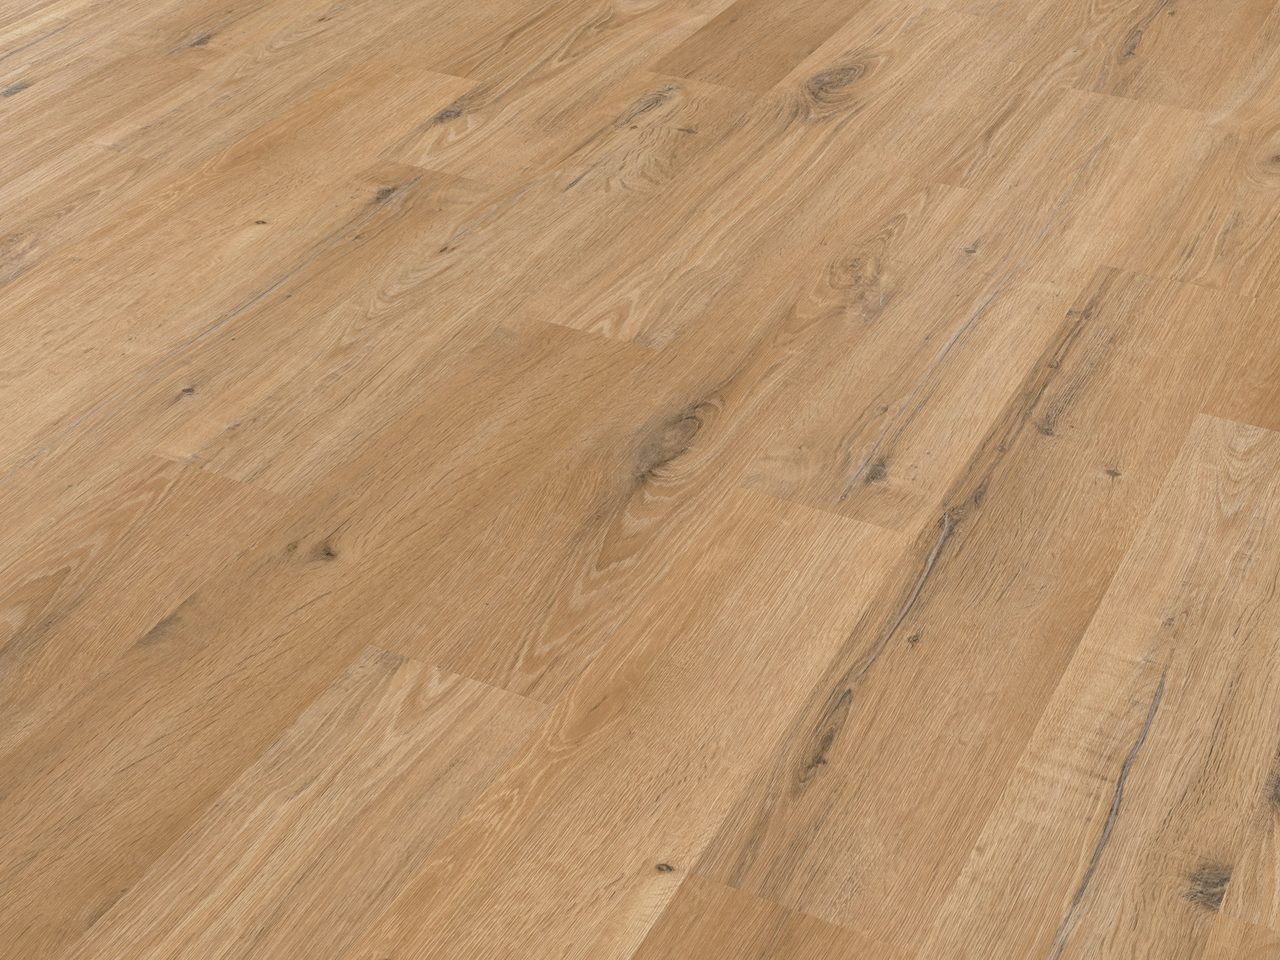 Brown, Wood, Floor, Flooring